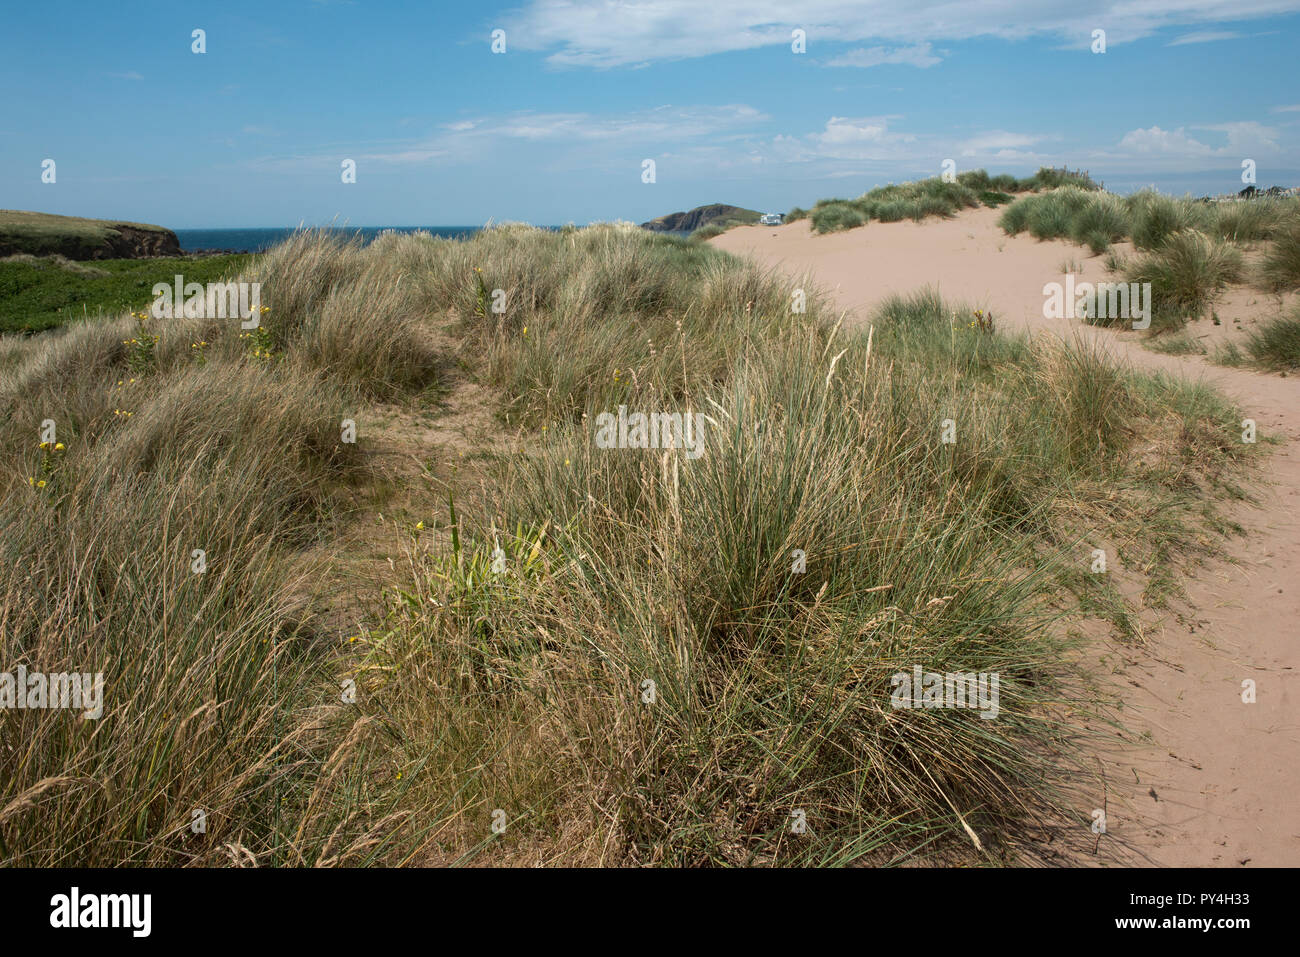 Nachtkerze und marram Gras wachsen auf bantham Strand controlling Wind Erosion auf den Sanddünen, South Devon, Juli Stockfoto